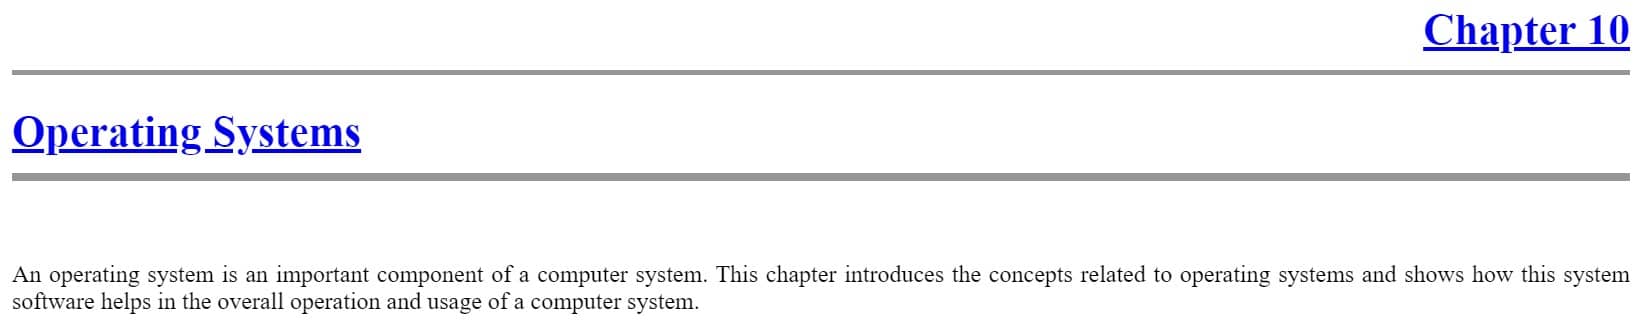 فصل 10 کتاب Foundations of Computing ویرایش پنجم